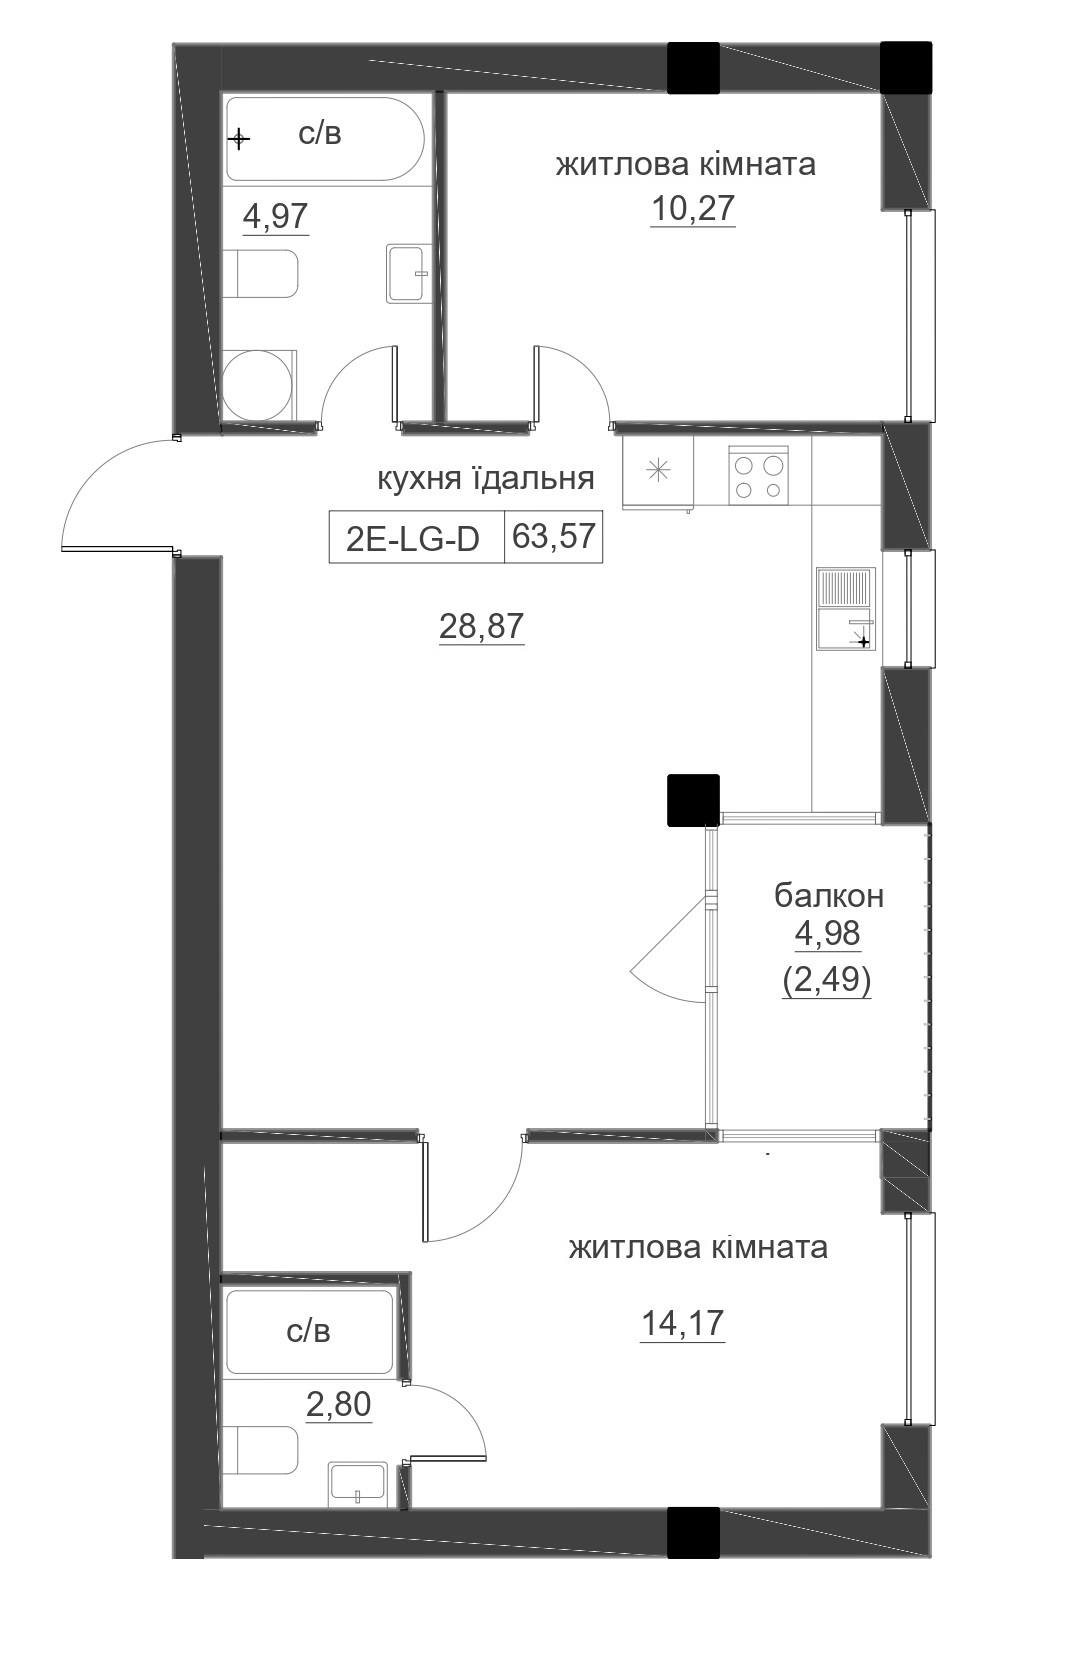 Планування 2-к квартира площею 63.57м2, LR-005-06/0006.